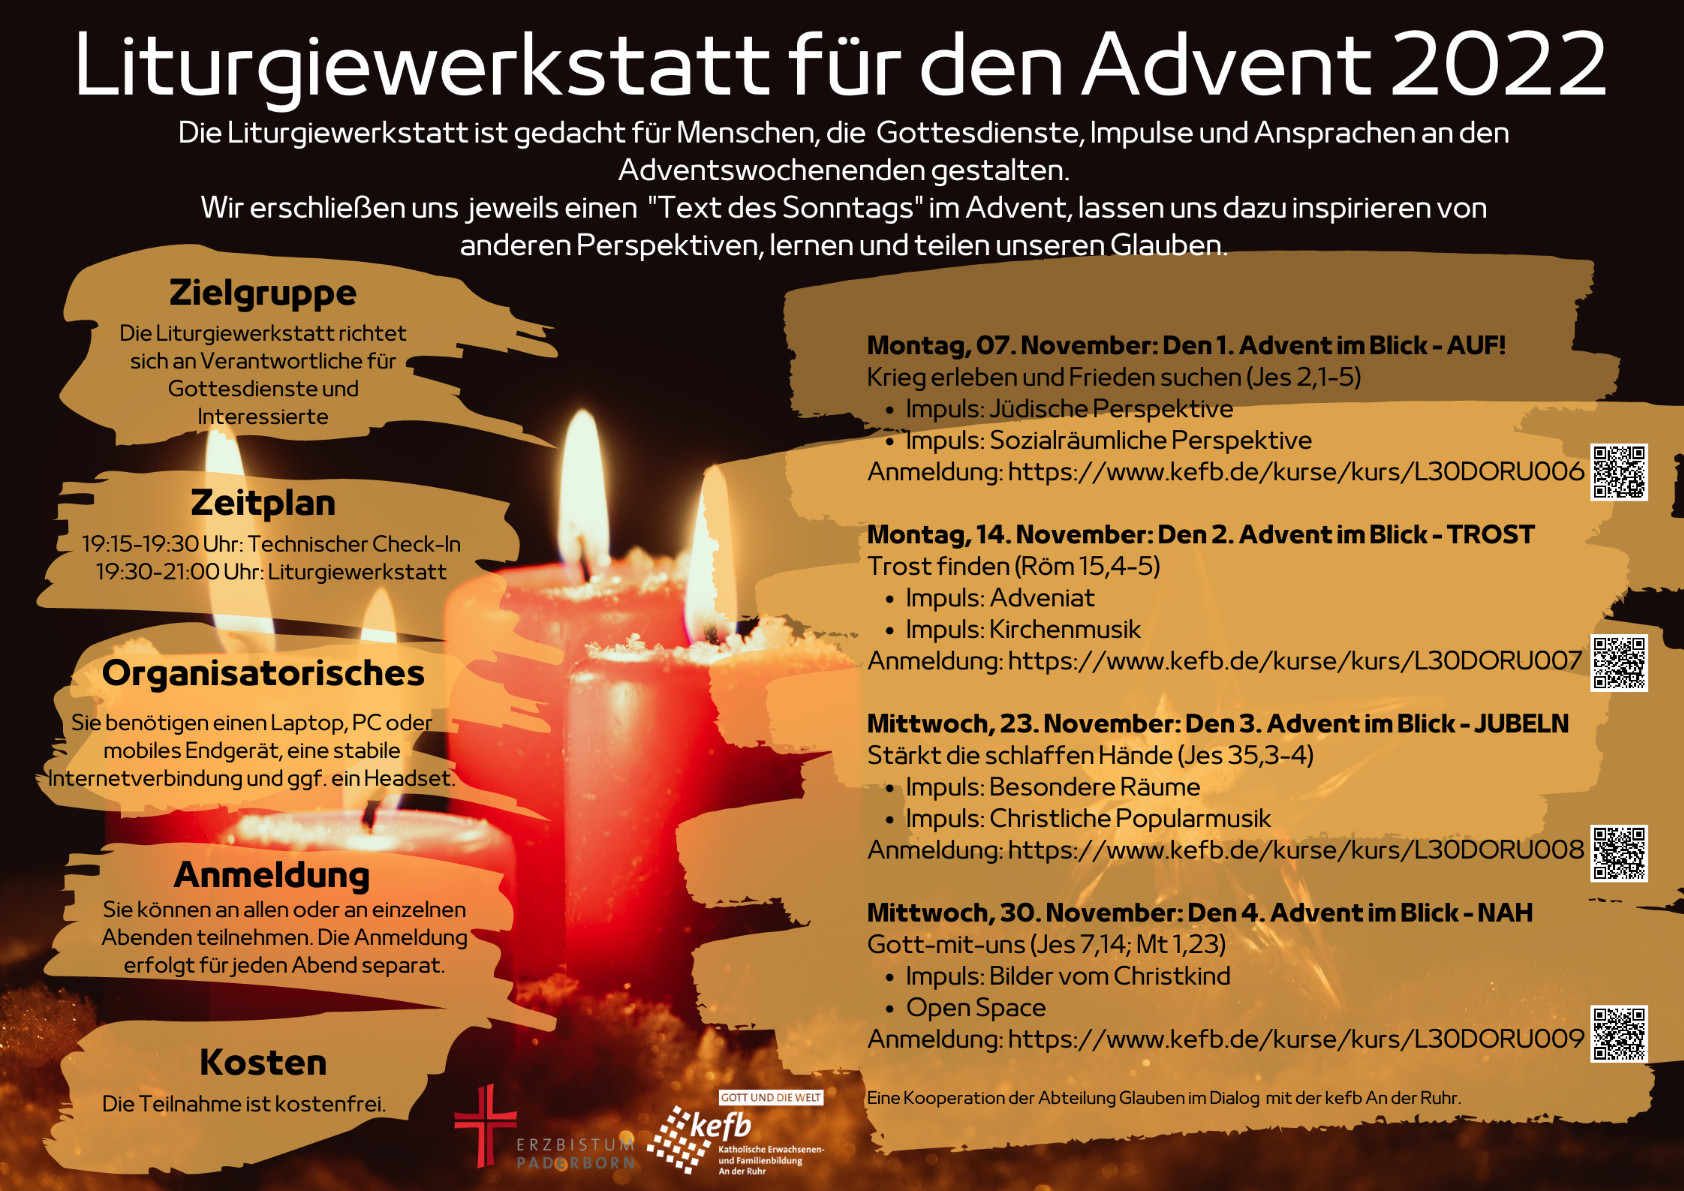 Liturgiewerkstatt Advent 2022 - 3 (c) Erzbistum Paderborn